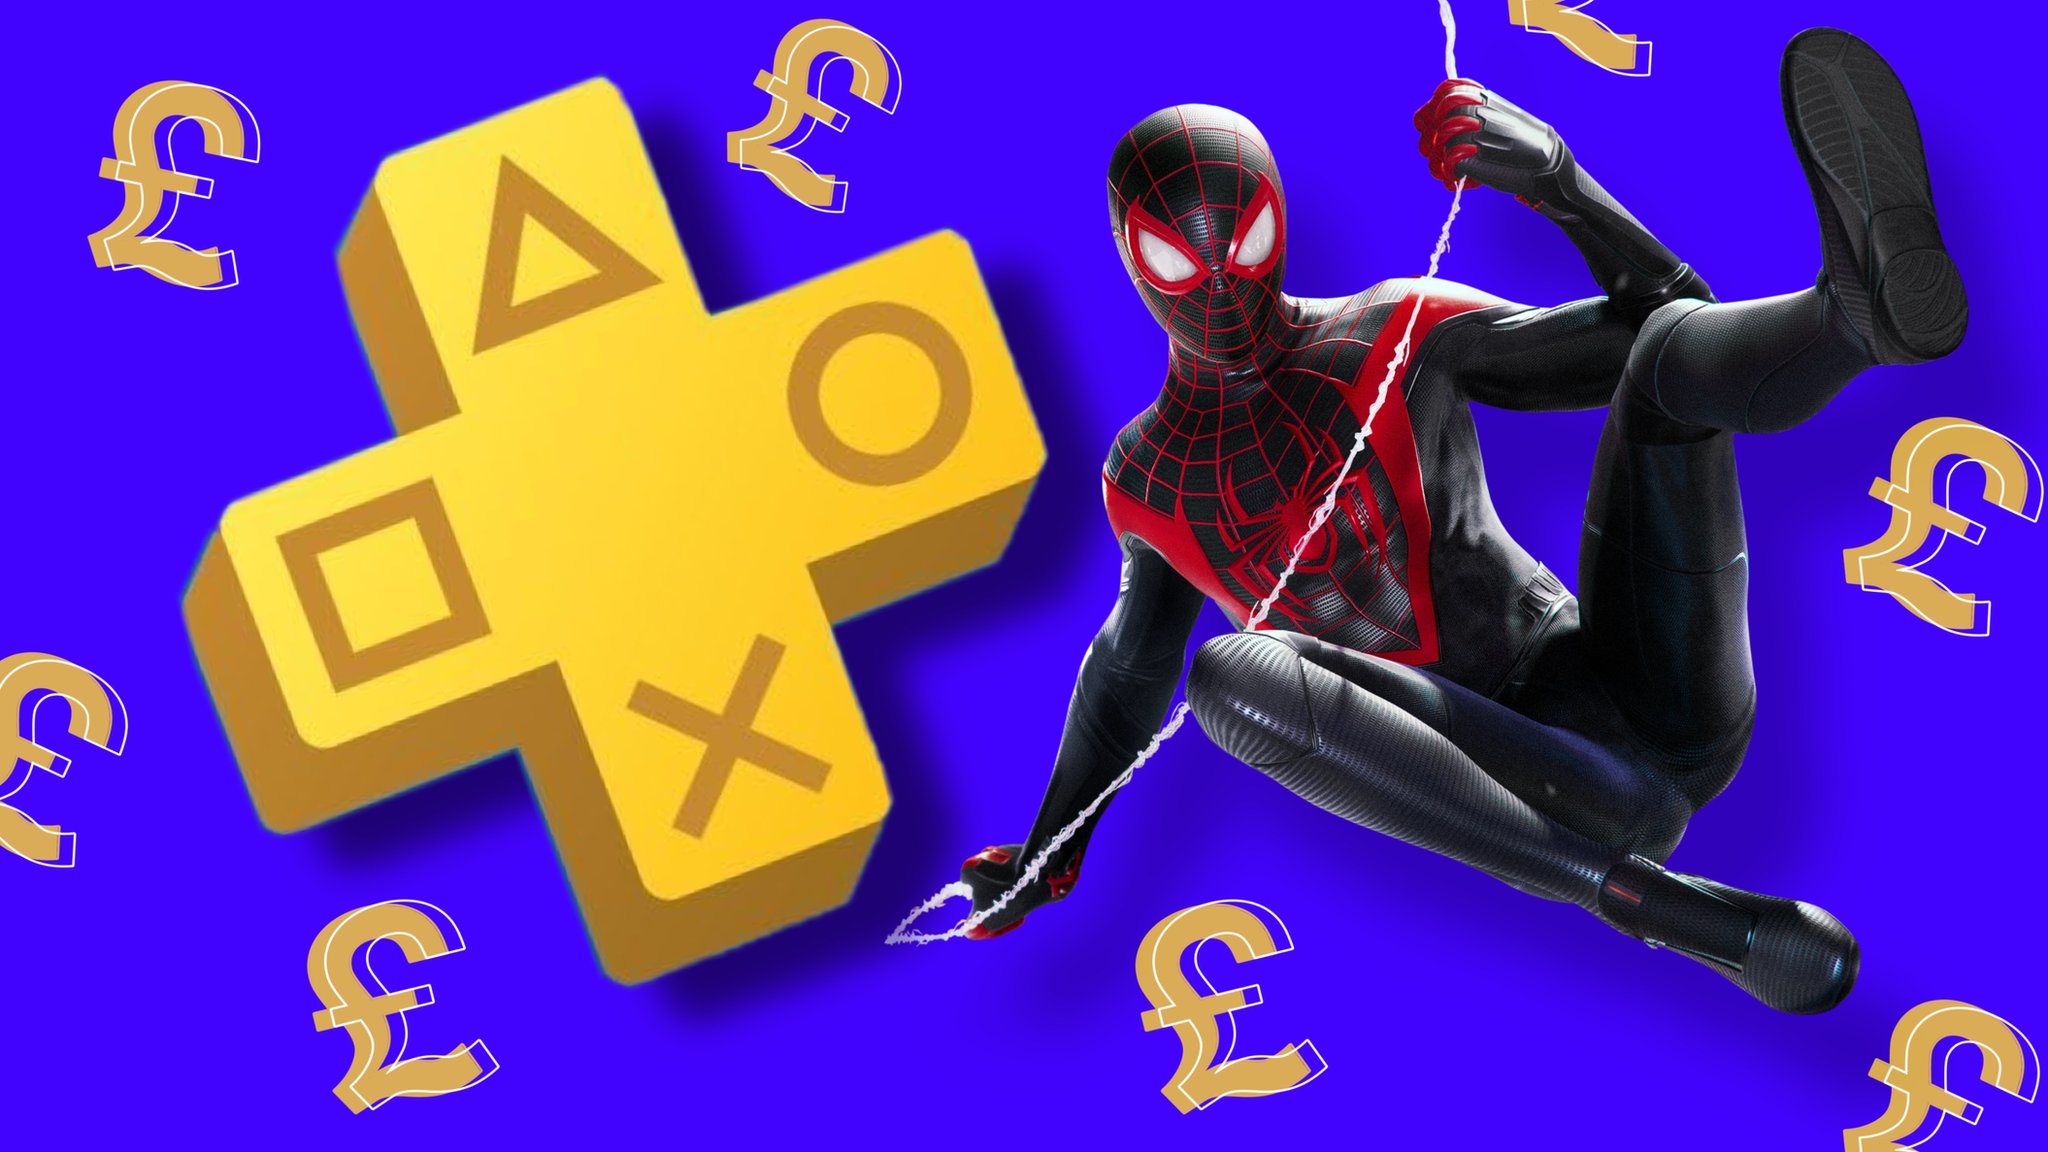 UK PlayStation Plus price rise kicks in next week